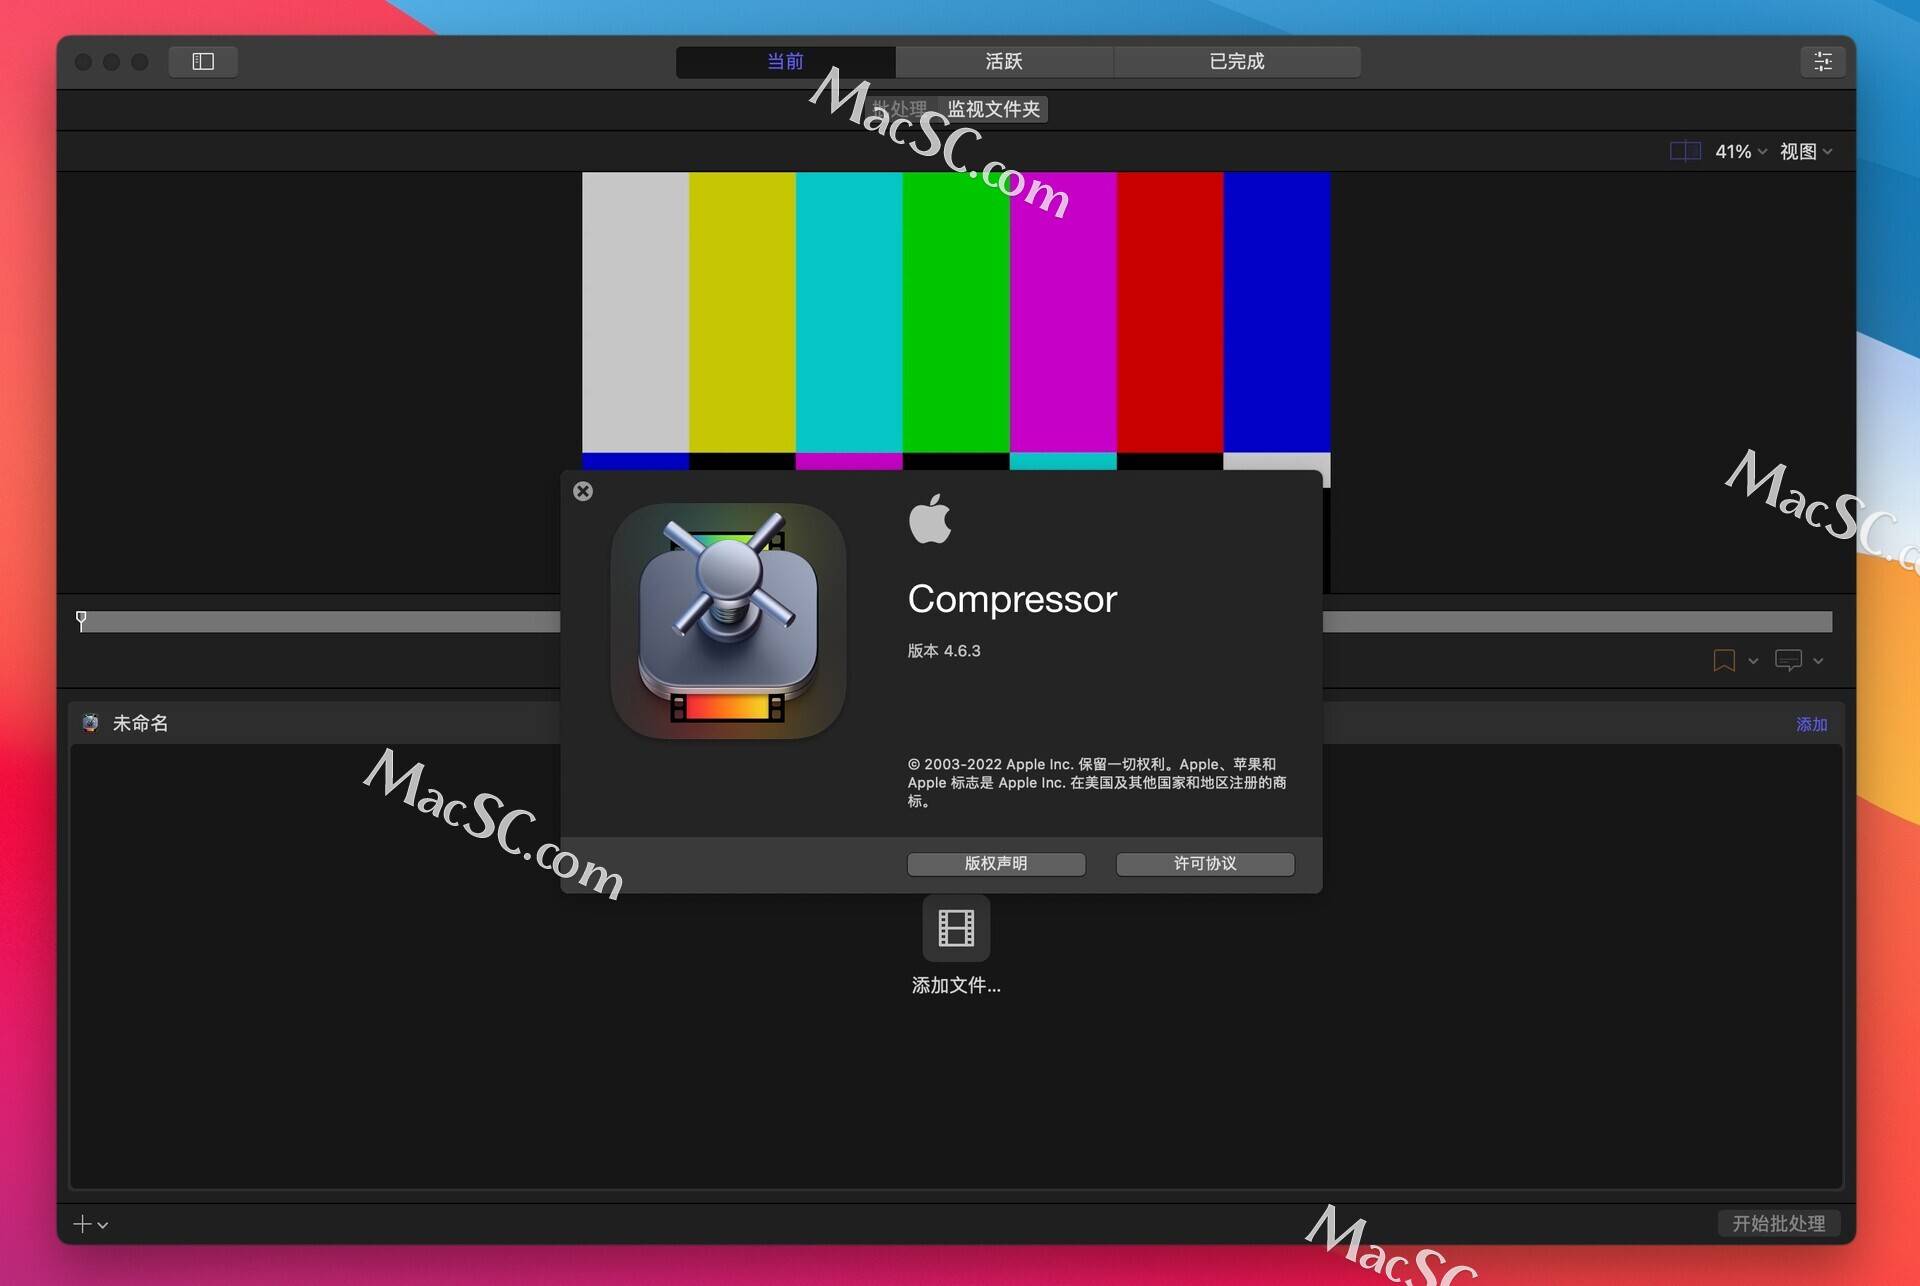 苹果游戏破解版改数据教程:Compressor 视频输出软件